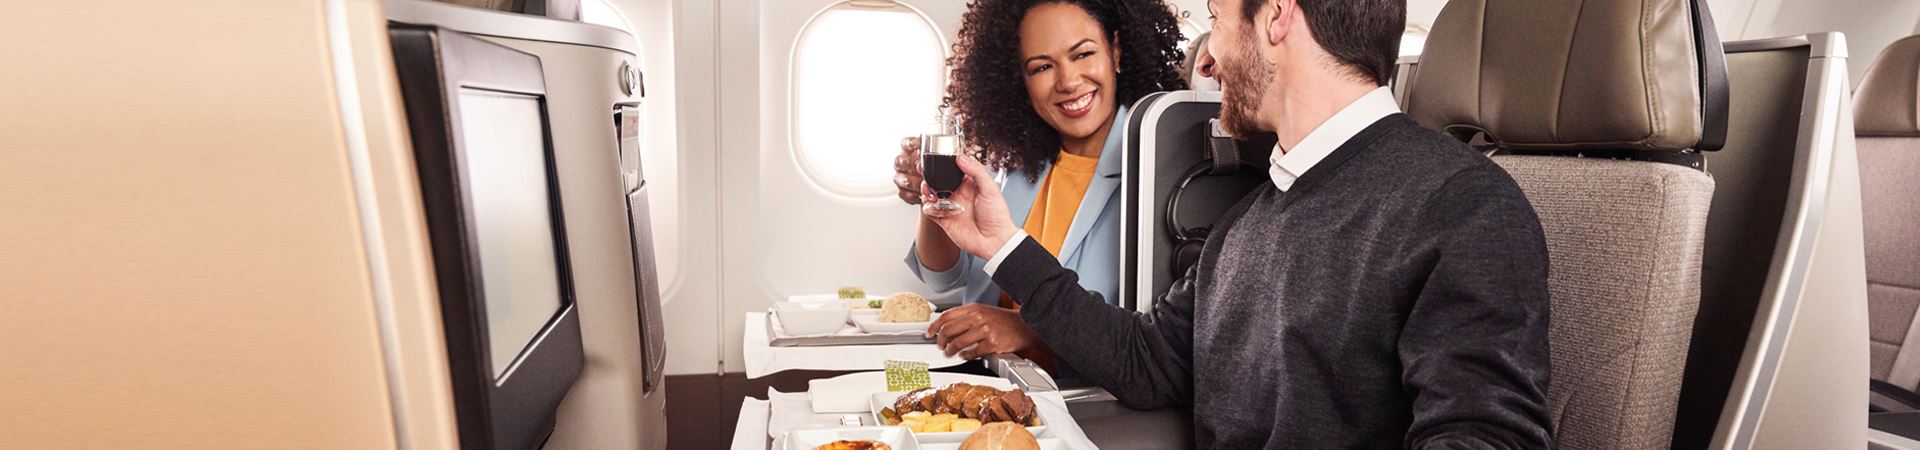 Ein lächelnder Mann und eine Frau sitzen nebeneinander an Bord eines TAP-Flugzeugs. Beide halten ein Glas in der Hand und stoßen an. Vor jedem steht ein Tablett mit einem Fleischgericht, einem Stück Brot und einem „Pastel de Nata“.